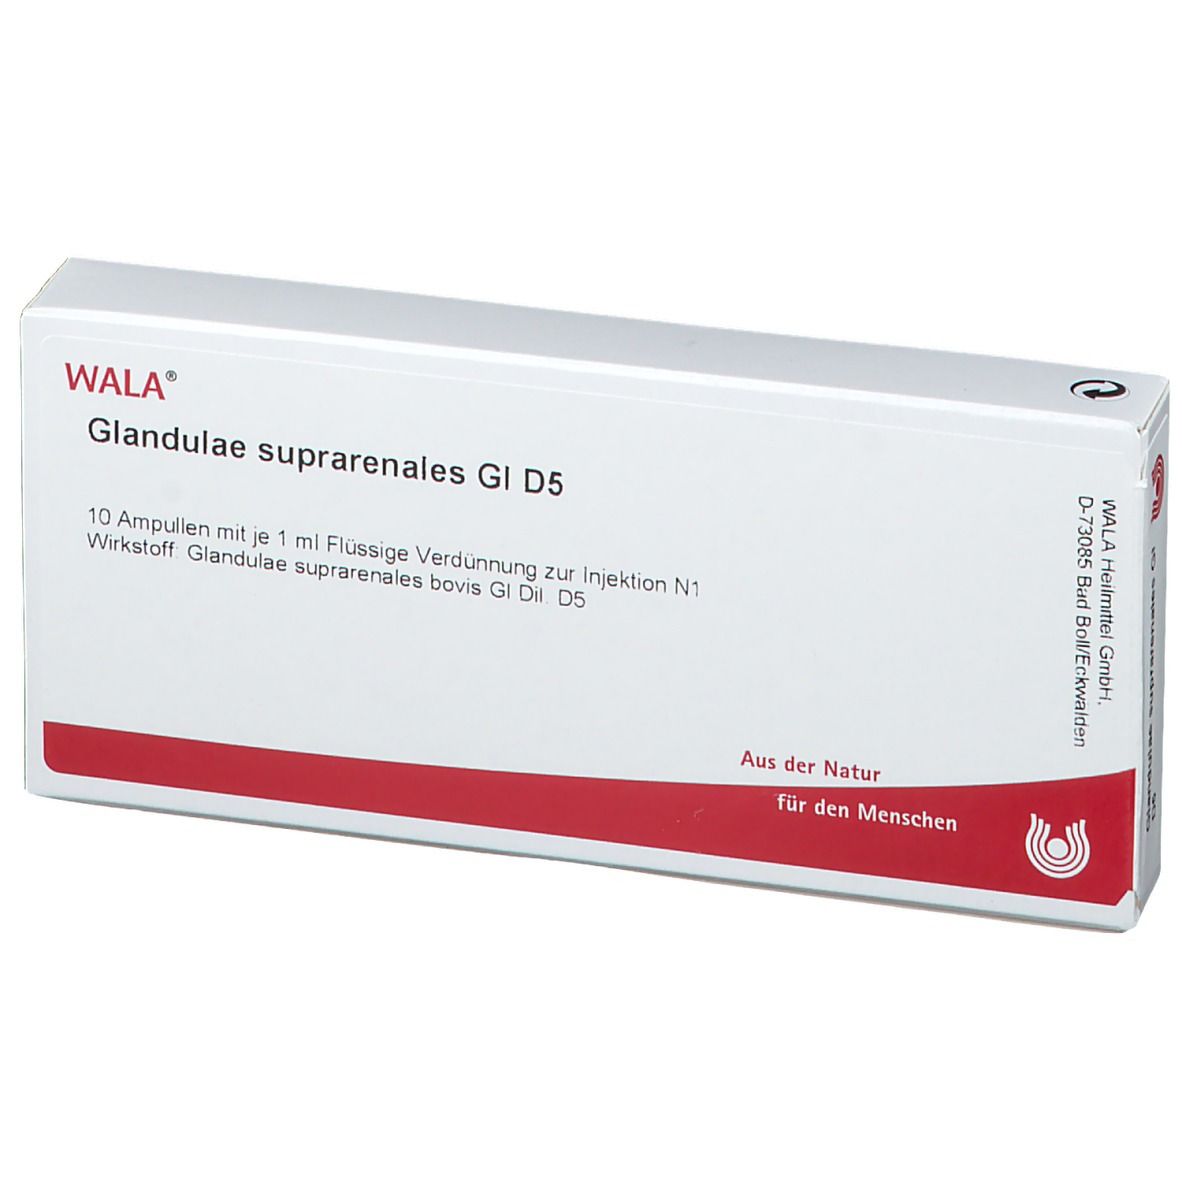 WALA® Glandulae suprarenalis Gl D5